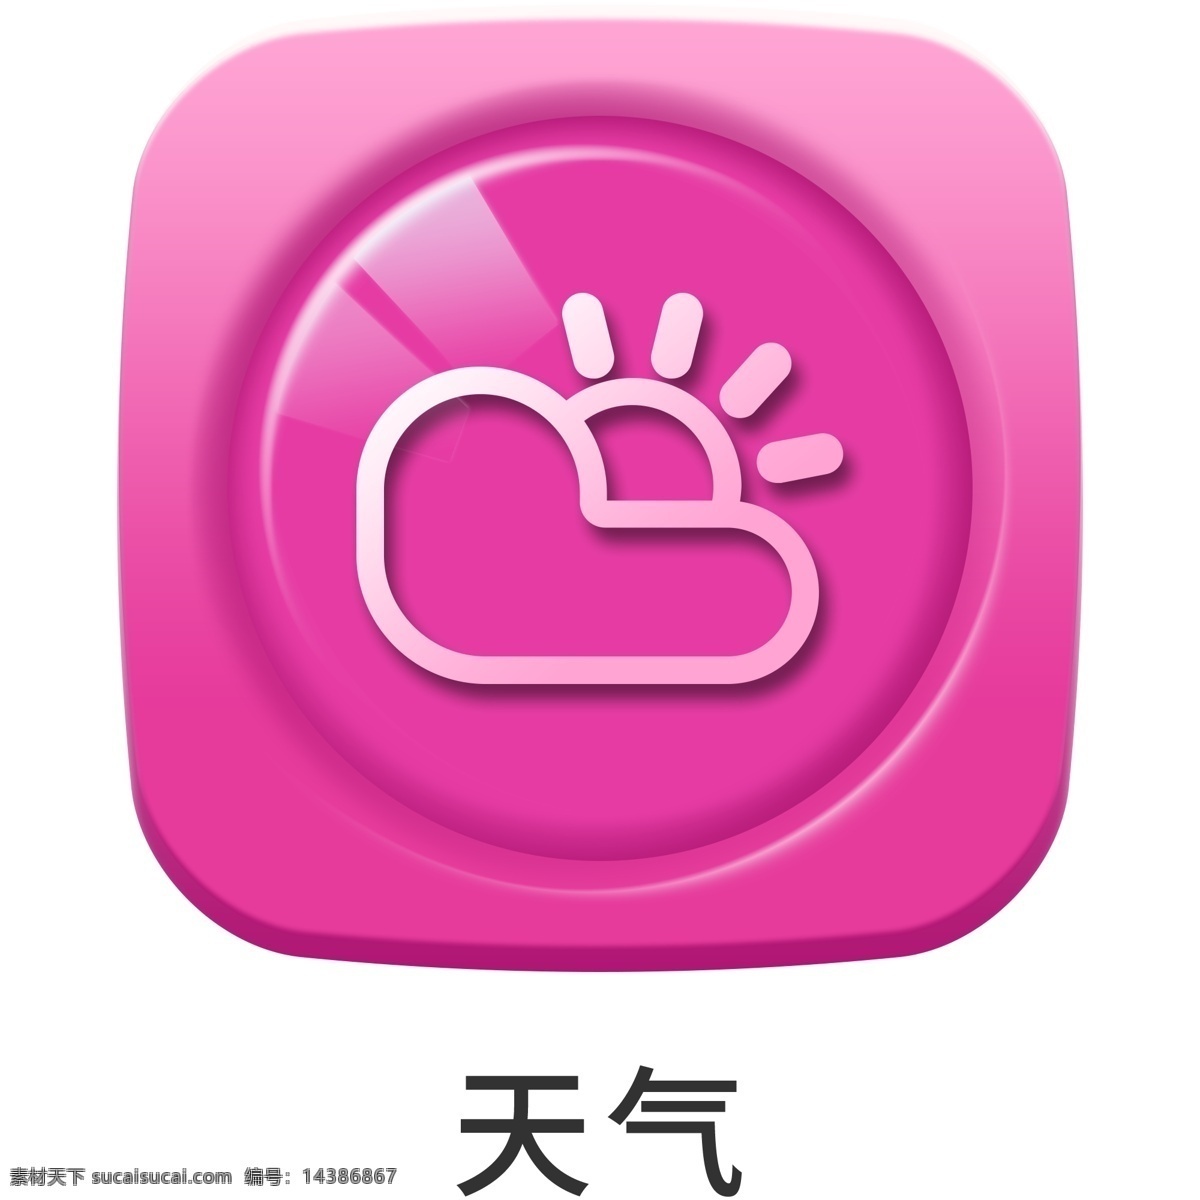 手机 主题 多彩 浮雕 天气 icon 元素 ui图标 彩色 图标 设计元素 手机主题 图标按钮